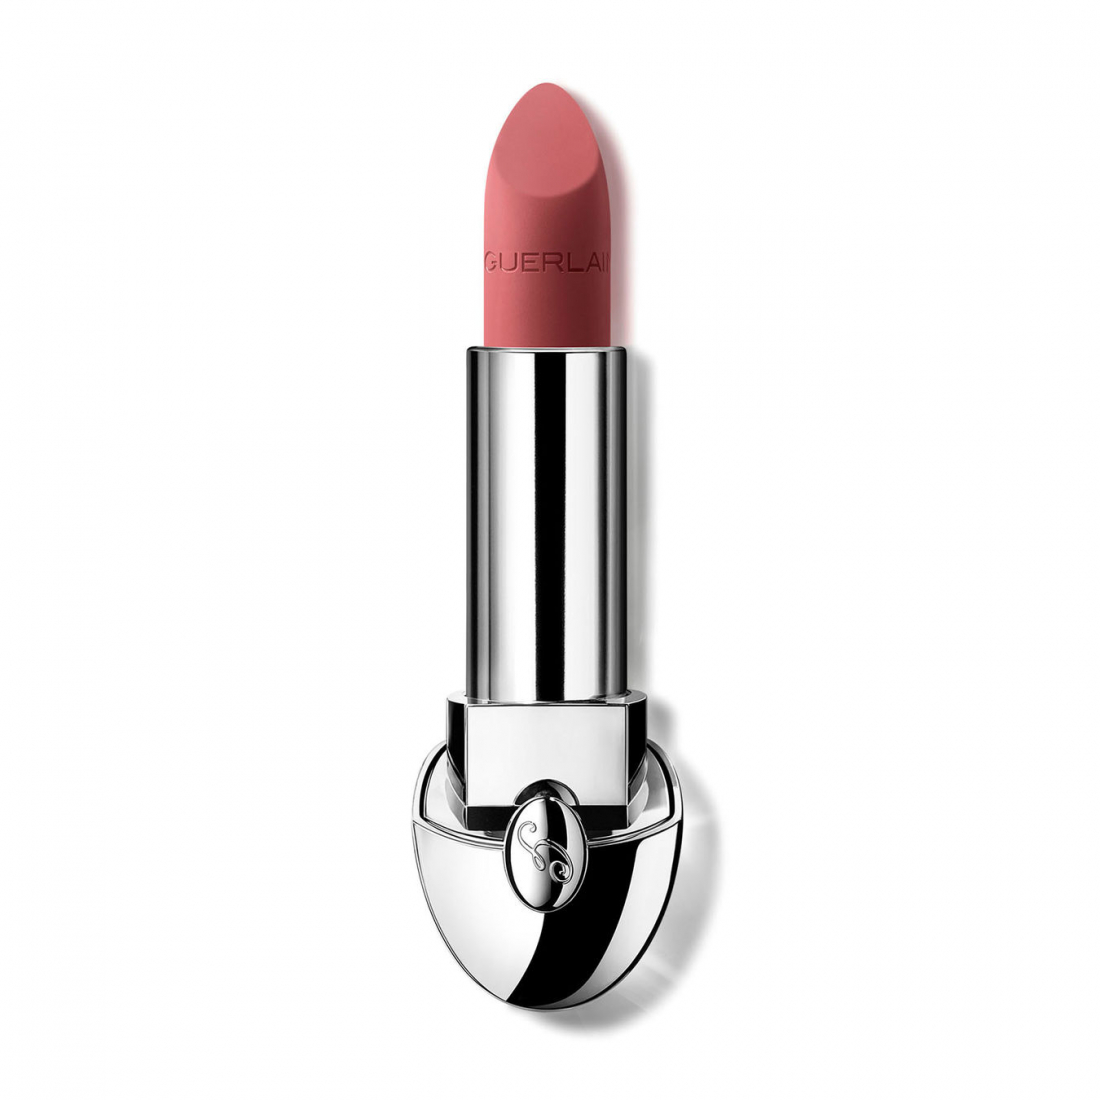 'Rouge G Raisin Velvet Matte' Lippenstift Nachfüllpackung - 258 Rosewood Beige 3.5 g